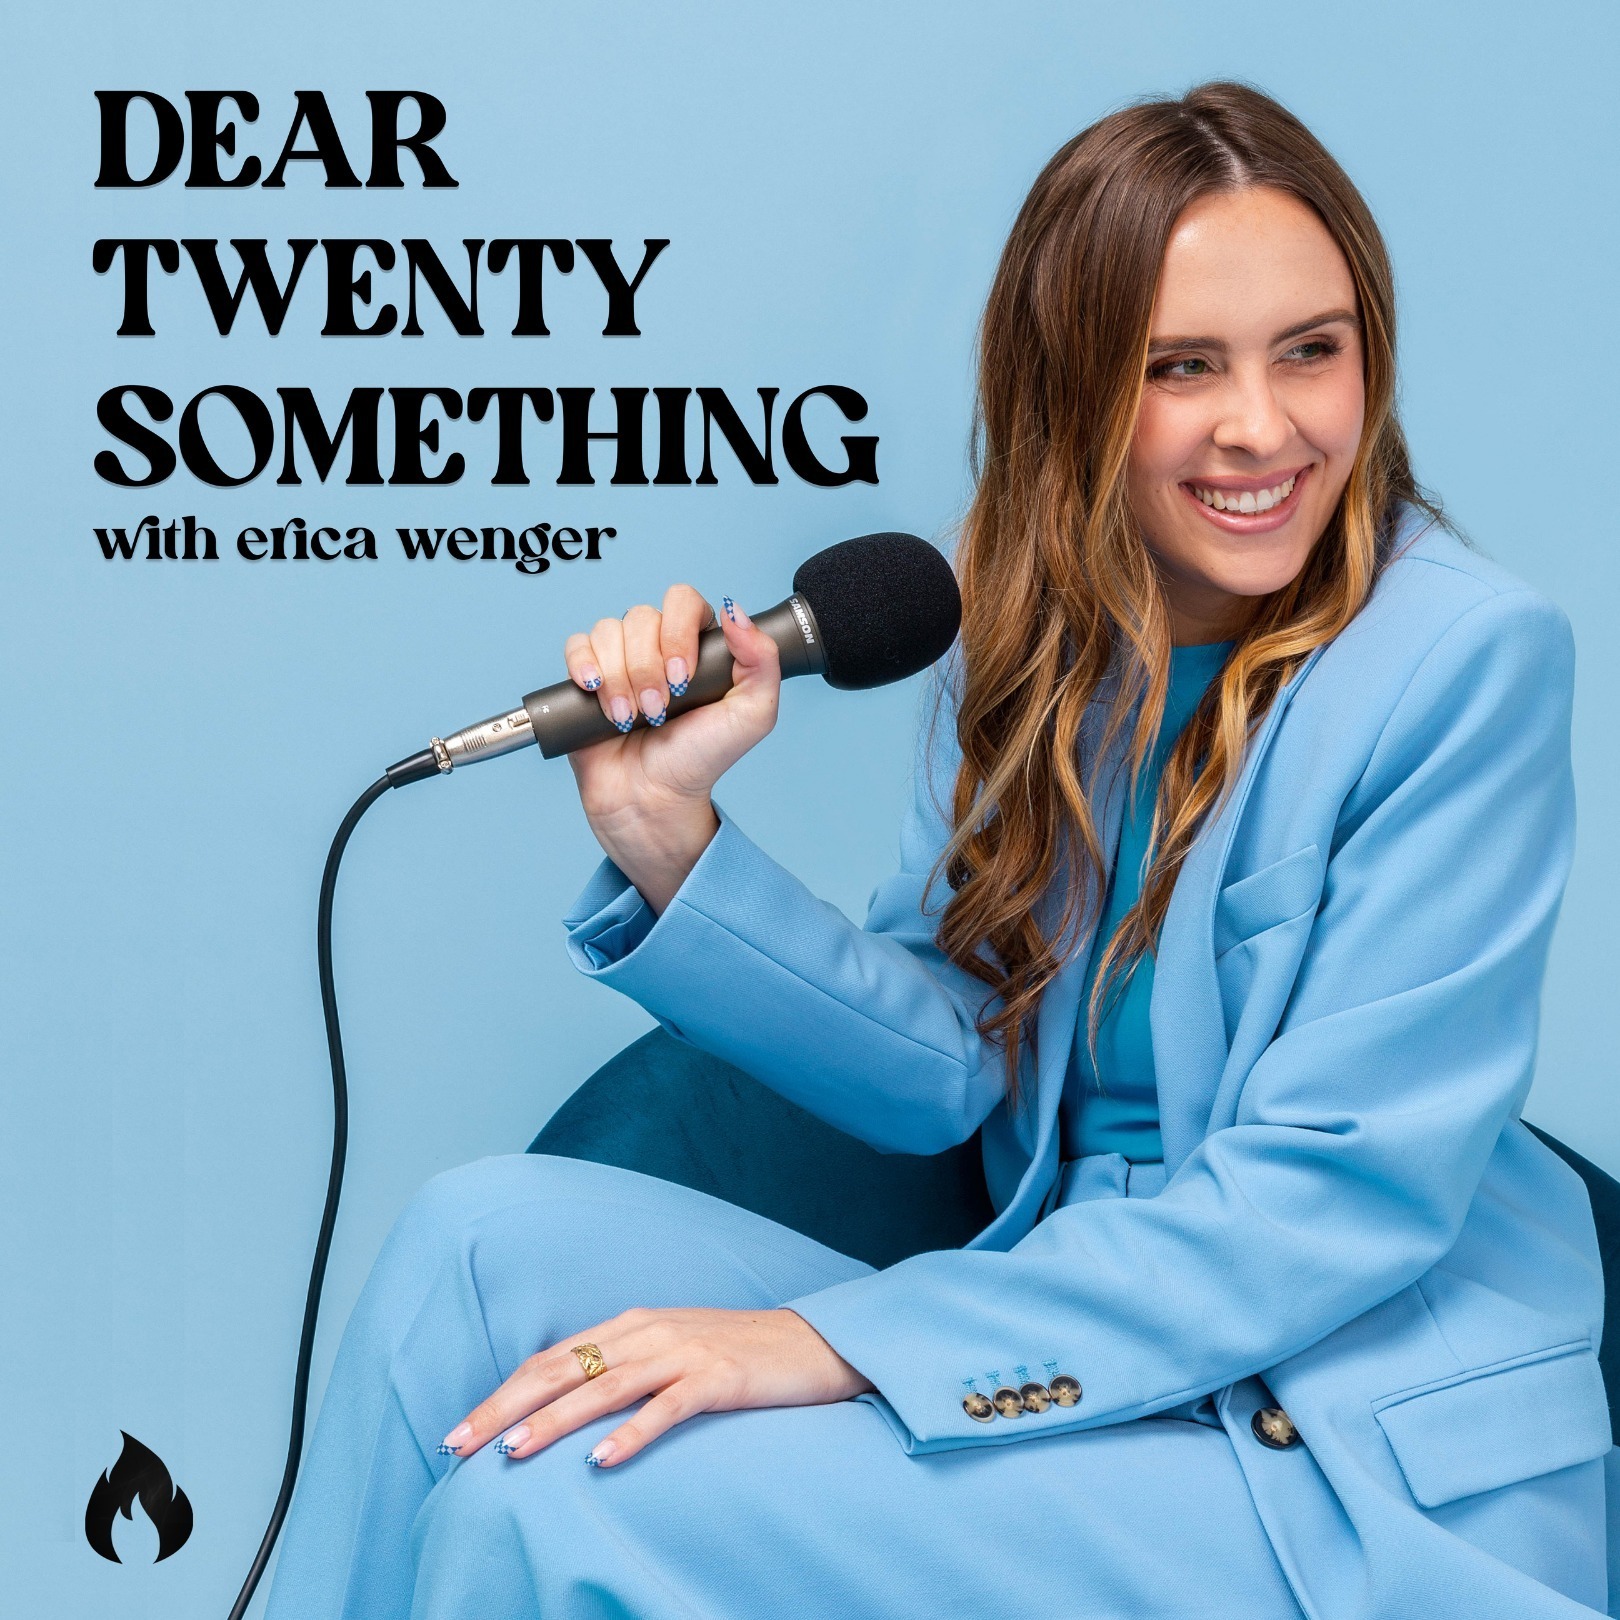 Dear Twentysomething podcast show image